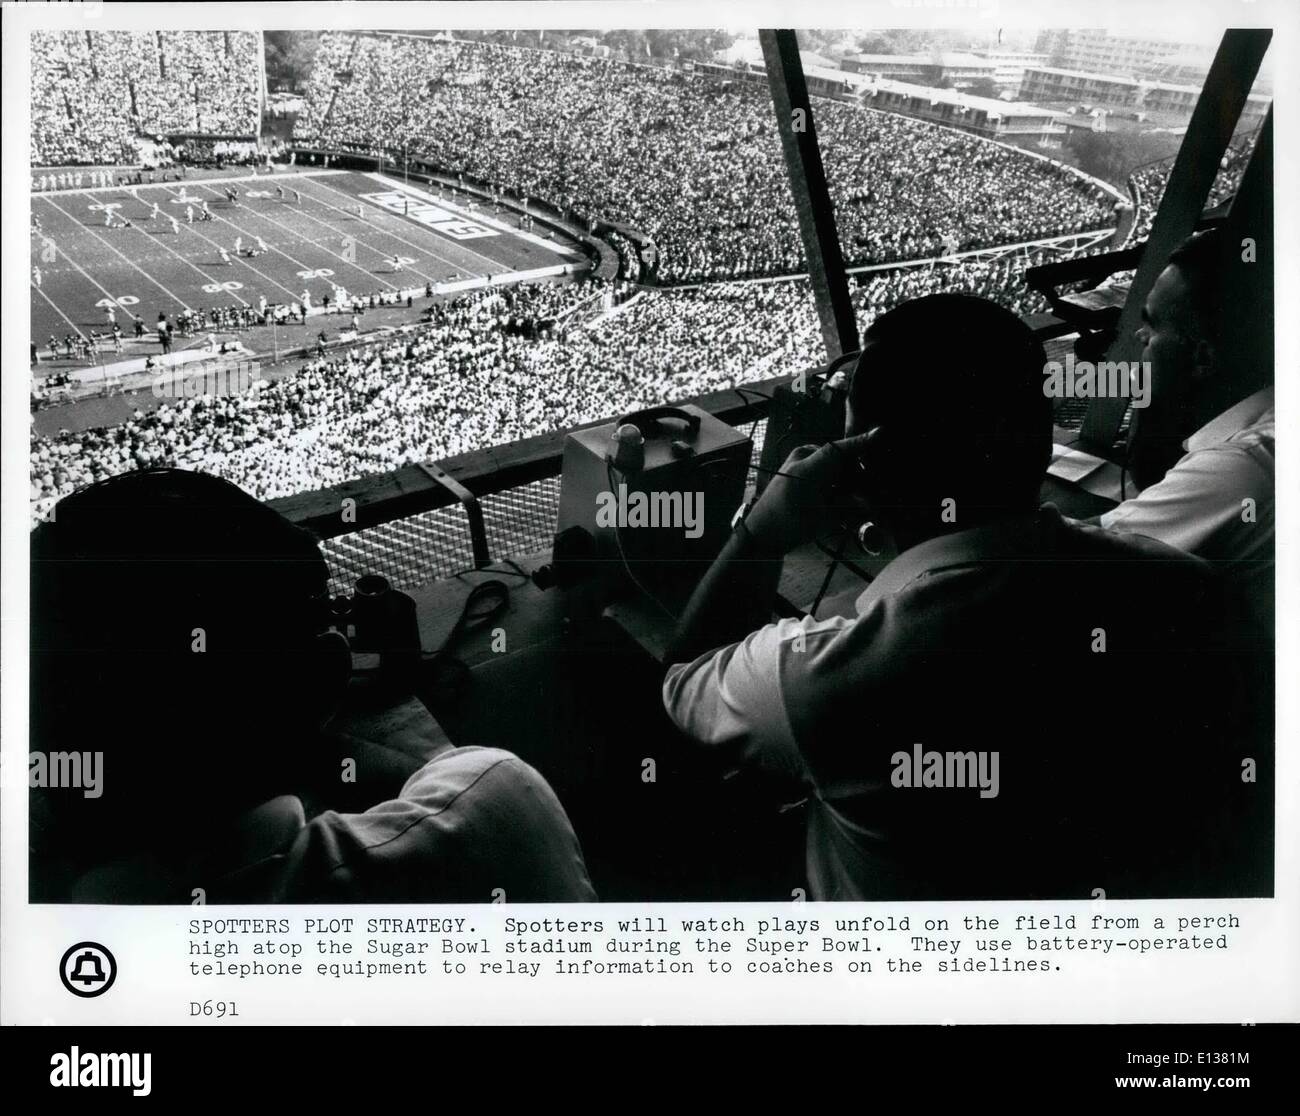 29 février 2012 - physionomistes va watch joue sur le terrain à partir d'un perchoir au sommet du Sugar Bowl Stadium pendant le Super Bowl. Ils utilisent l'équipement téléphonique fonctionnant sur batterie pour transmettre l'information aux entraîneurs sur la touche. Banque D'Images